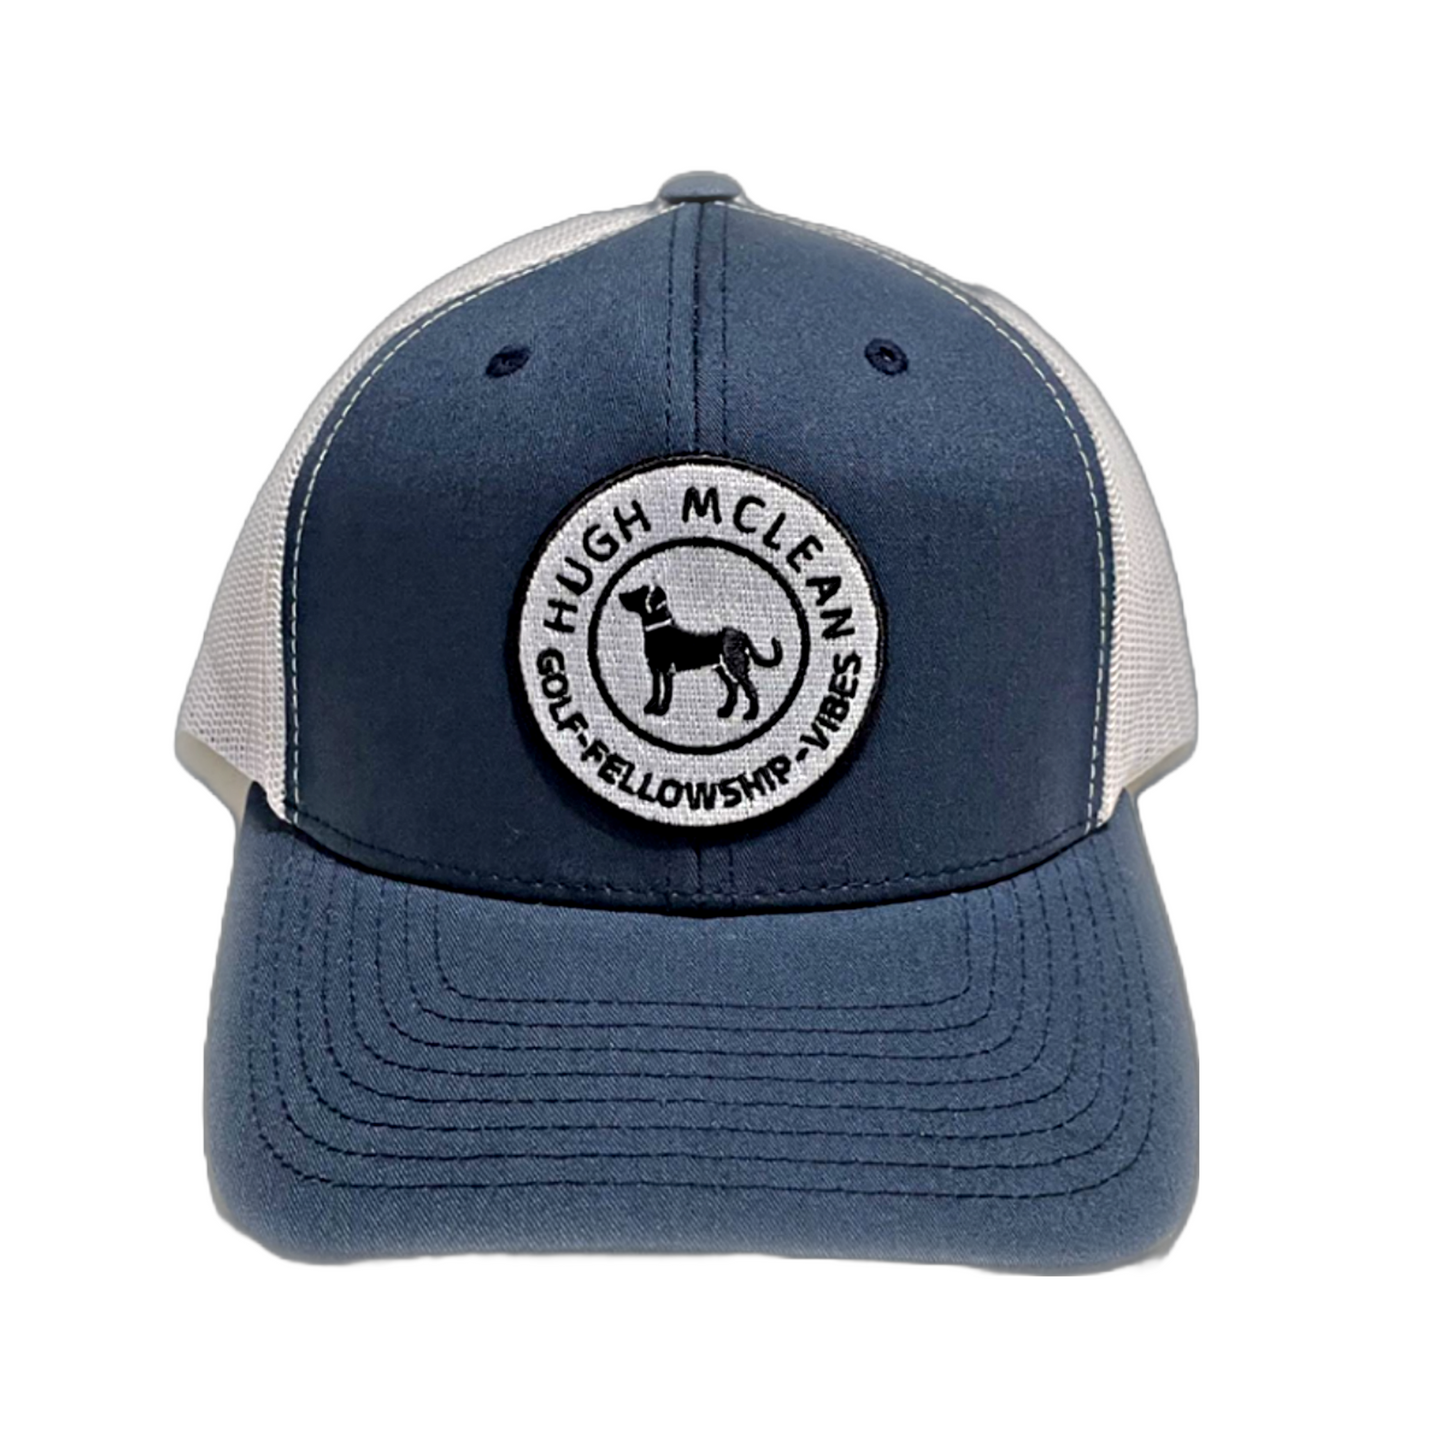 Hugh McLean Two Tone Snap Back Trucker Hat